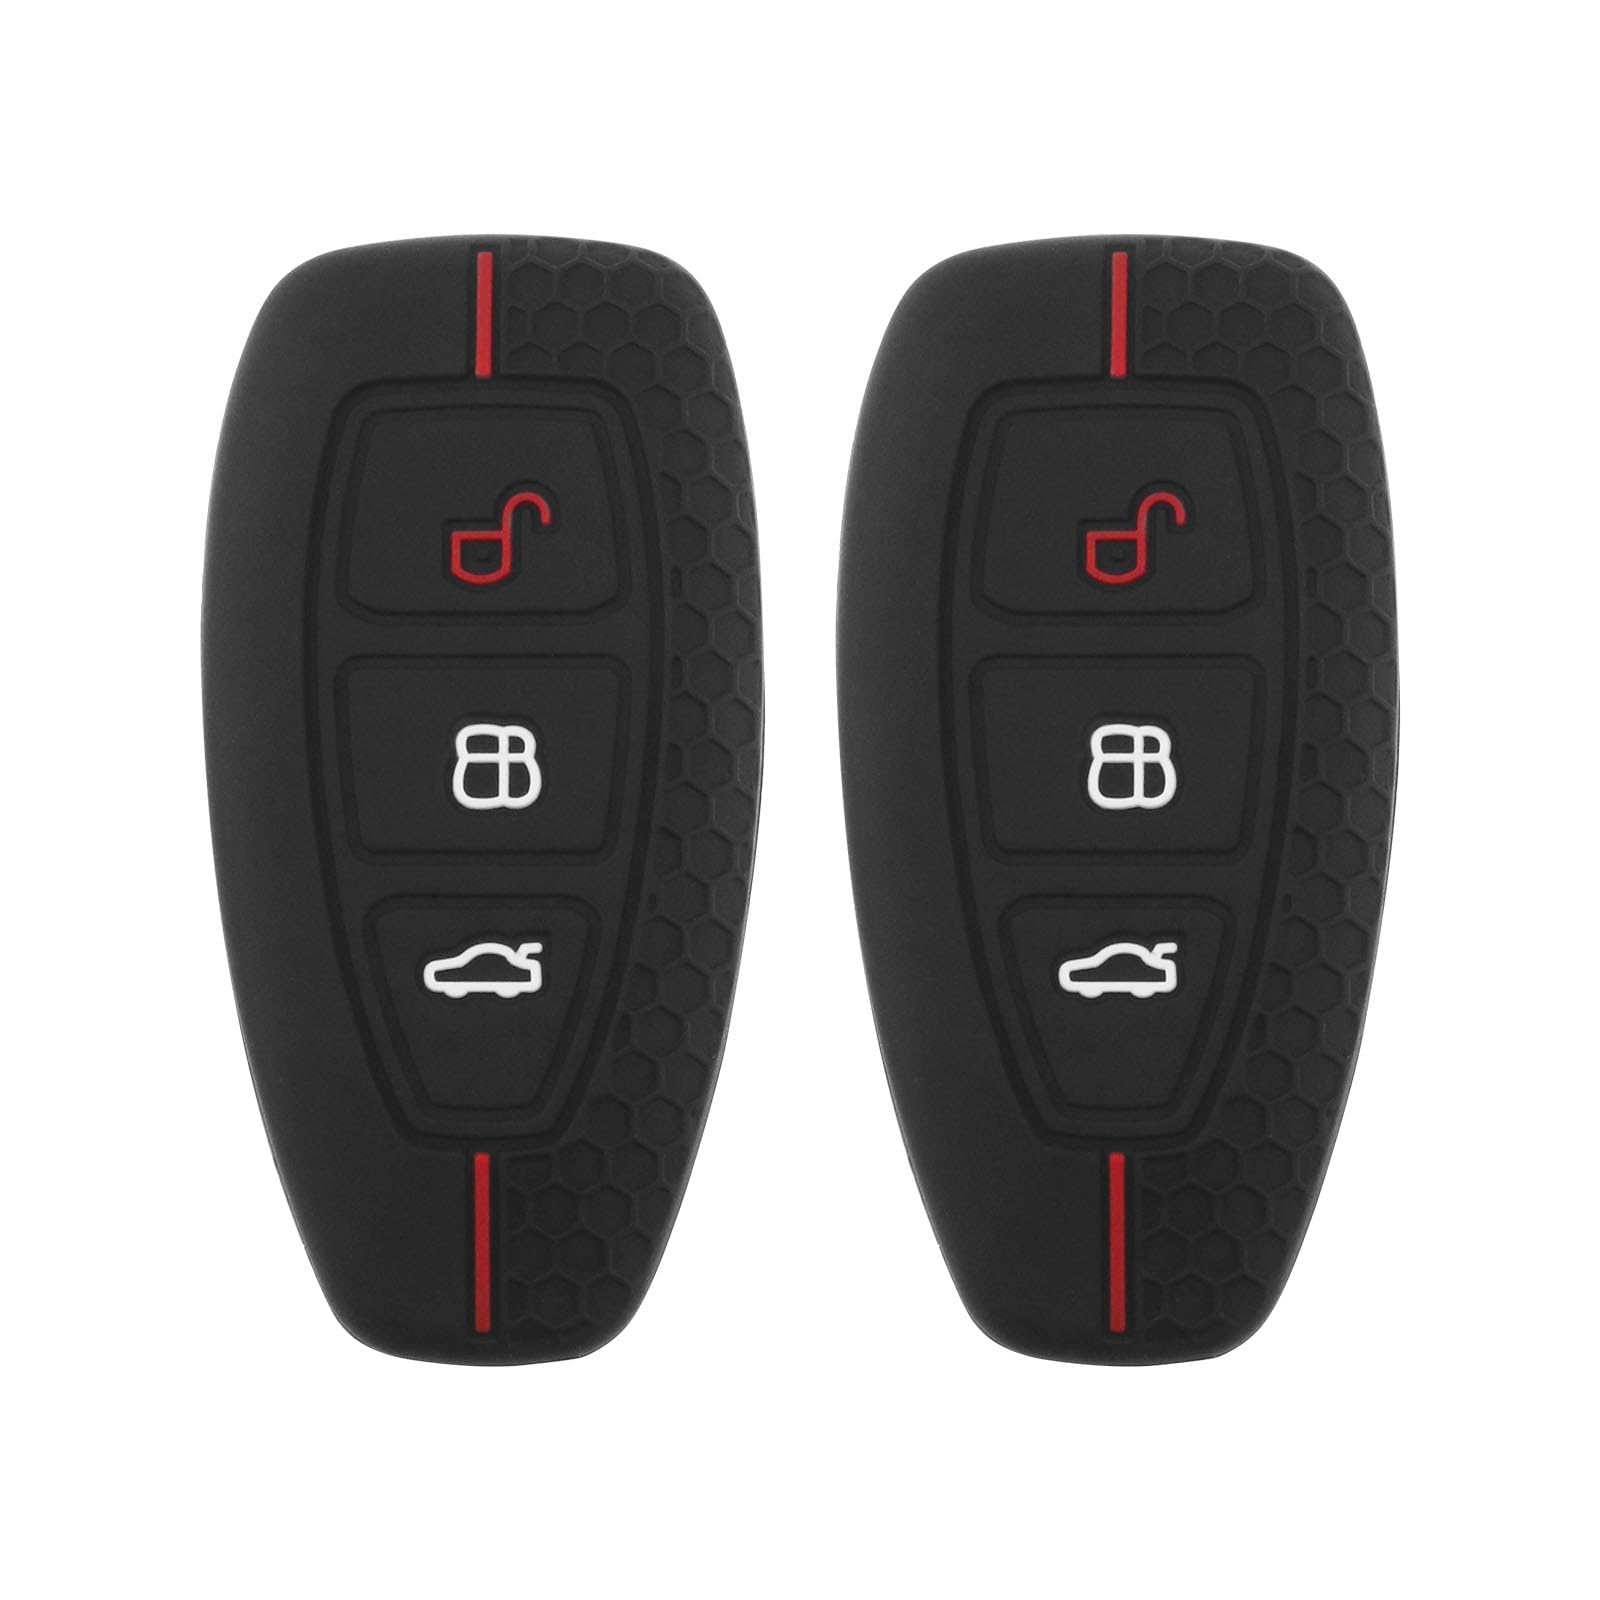 EMSea 2stk 3-Tasten-Schlüsselschutz Schlüsselgehäuse Autoschlüssel Hülle Autoschlüsselschutz, Kompatibel mit Ford Focus, Kompatibel mit Ford Mondeo von EMSea